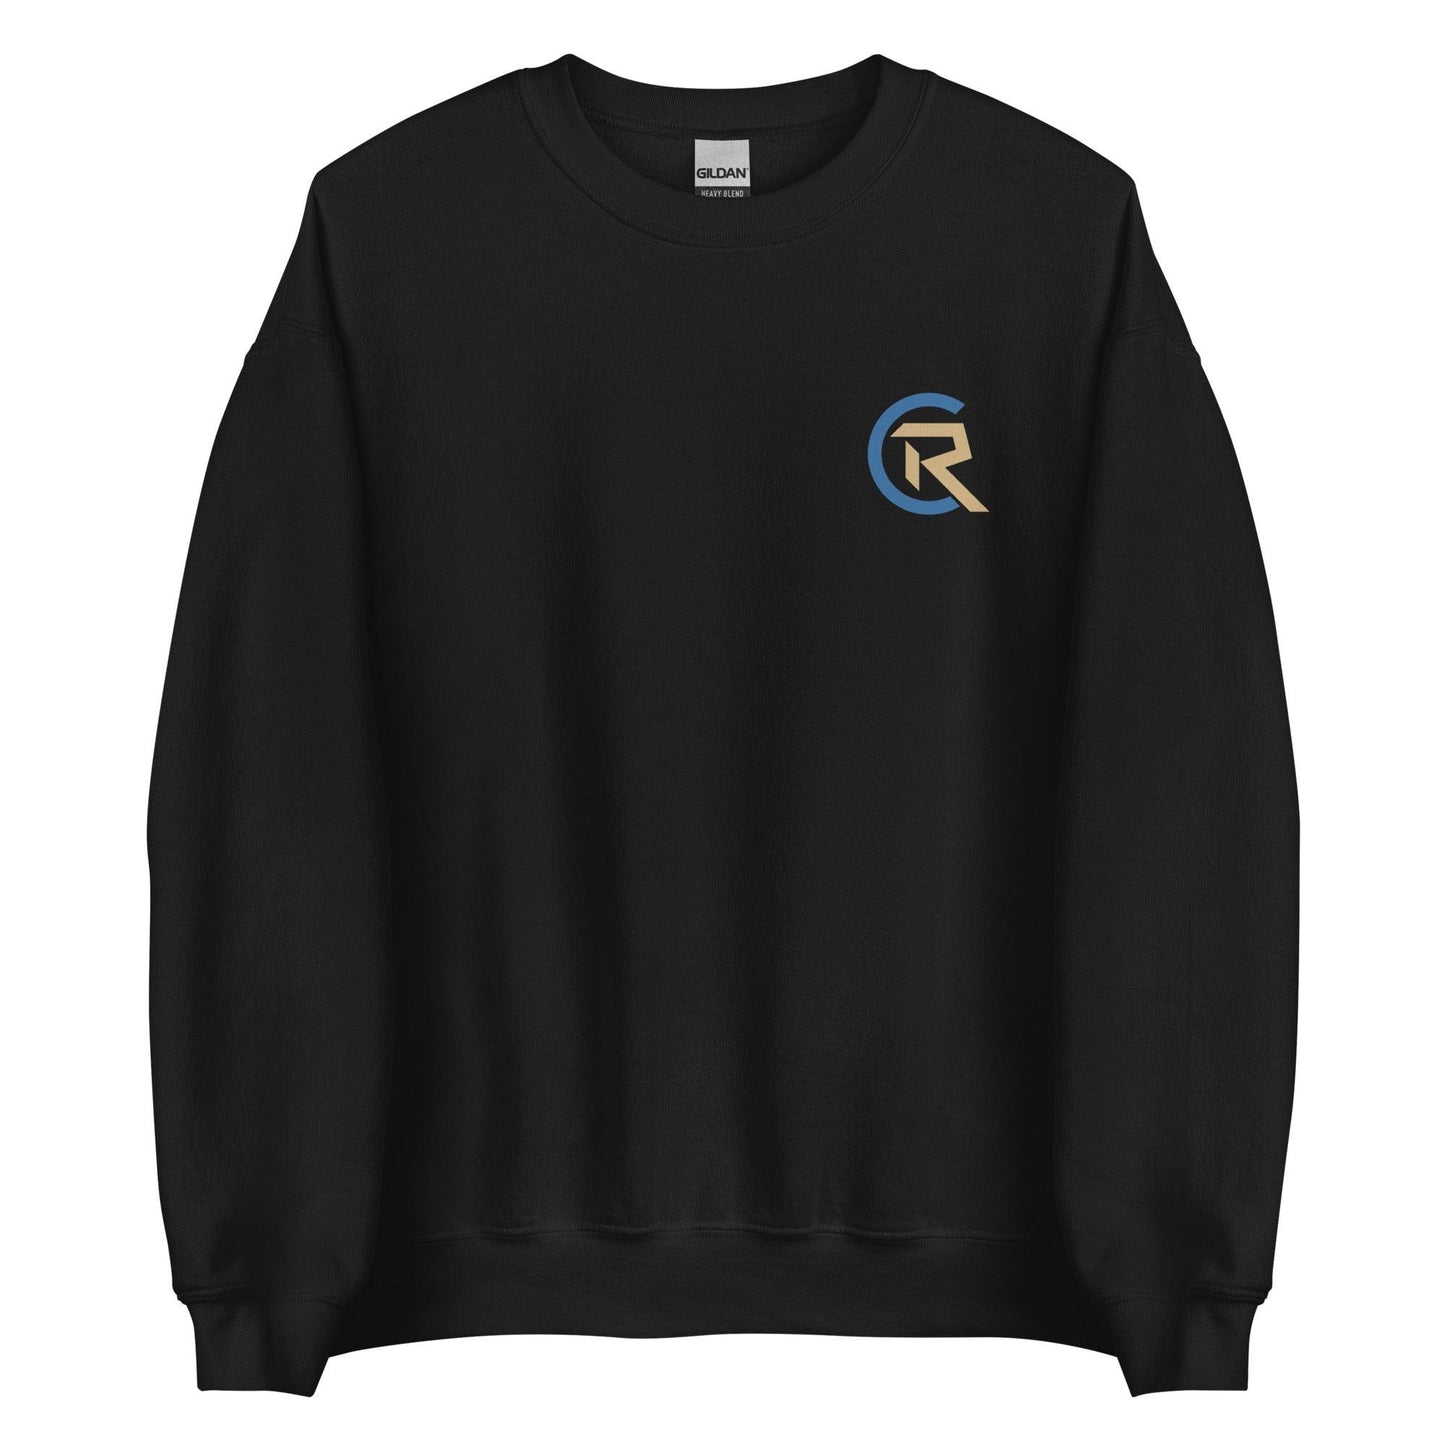 Cole Ragans "CR" Sweatshirt - Fan Arch